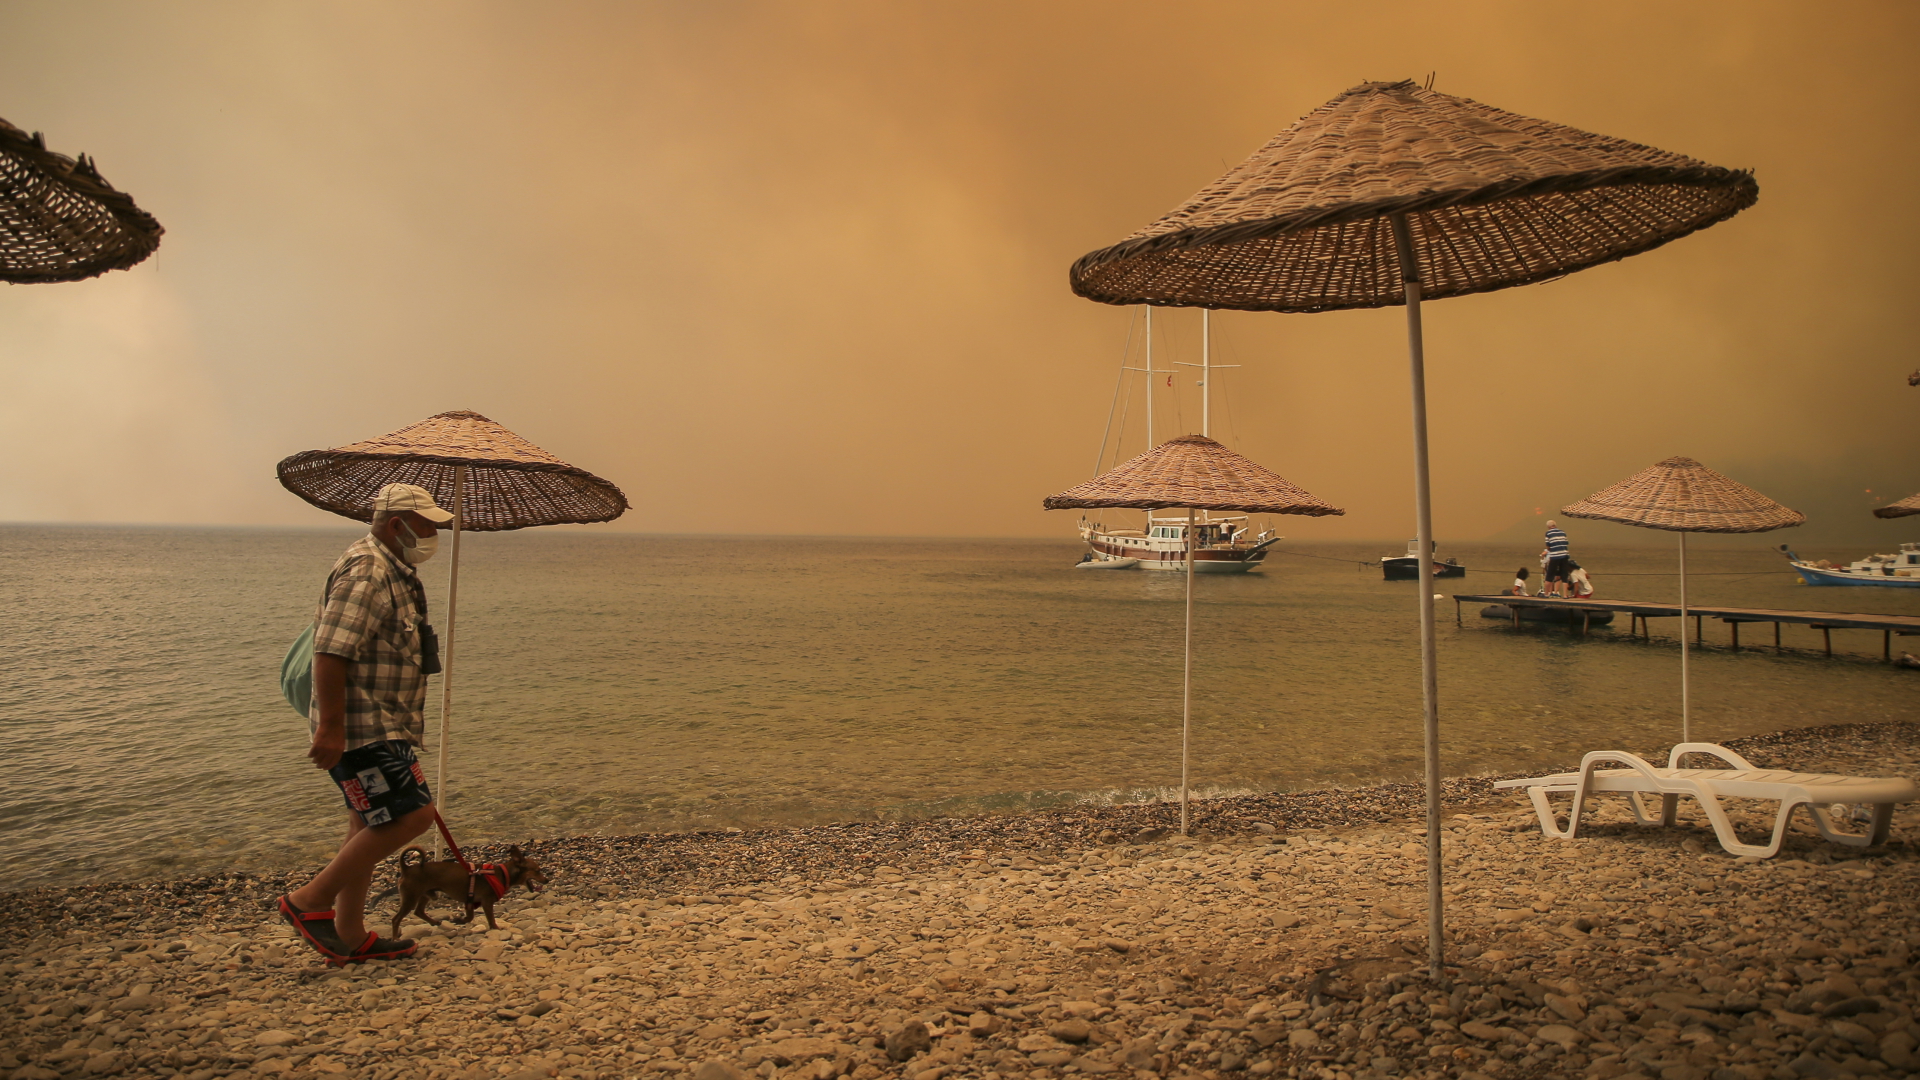  Ein Mann geht mit einem Hund durch rauchverhangene Luft an einem Strand im türkischen Bodrum entlang. | dpa